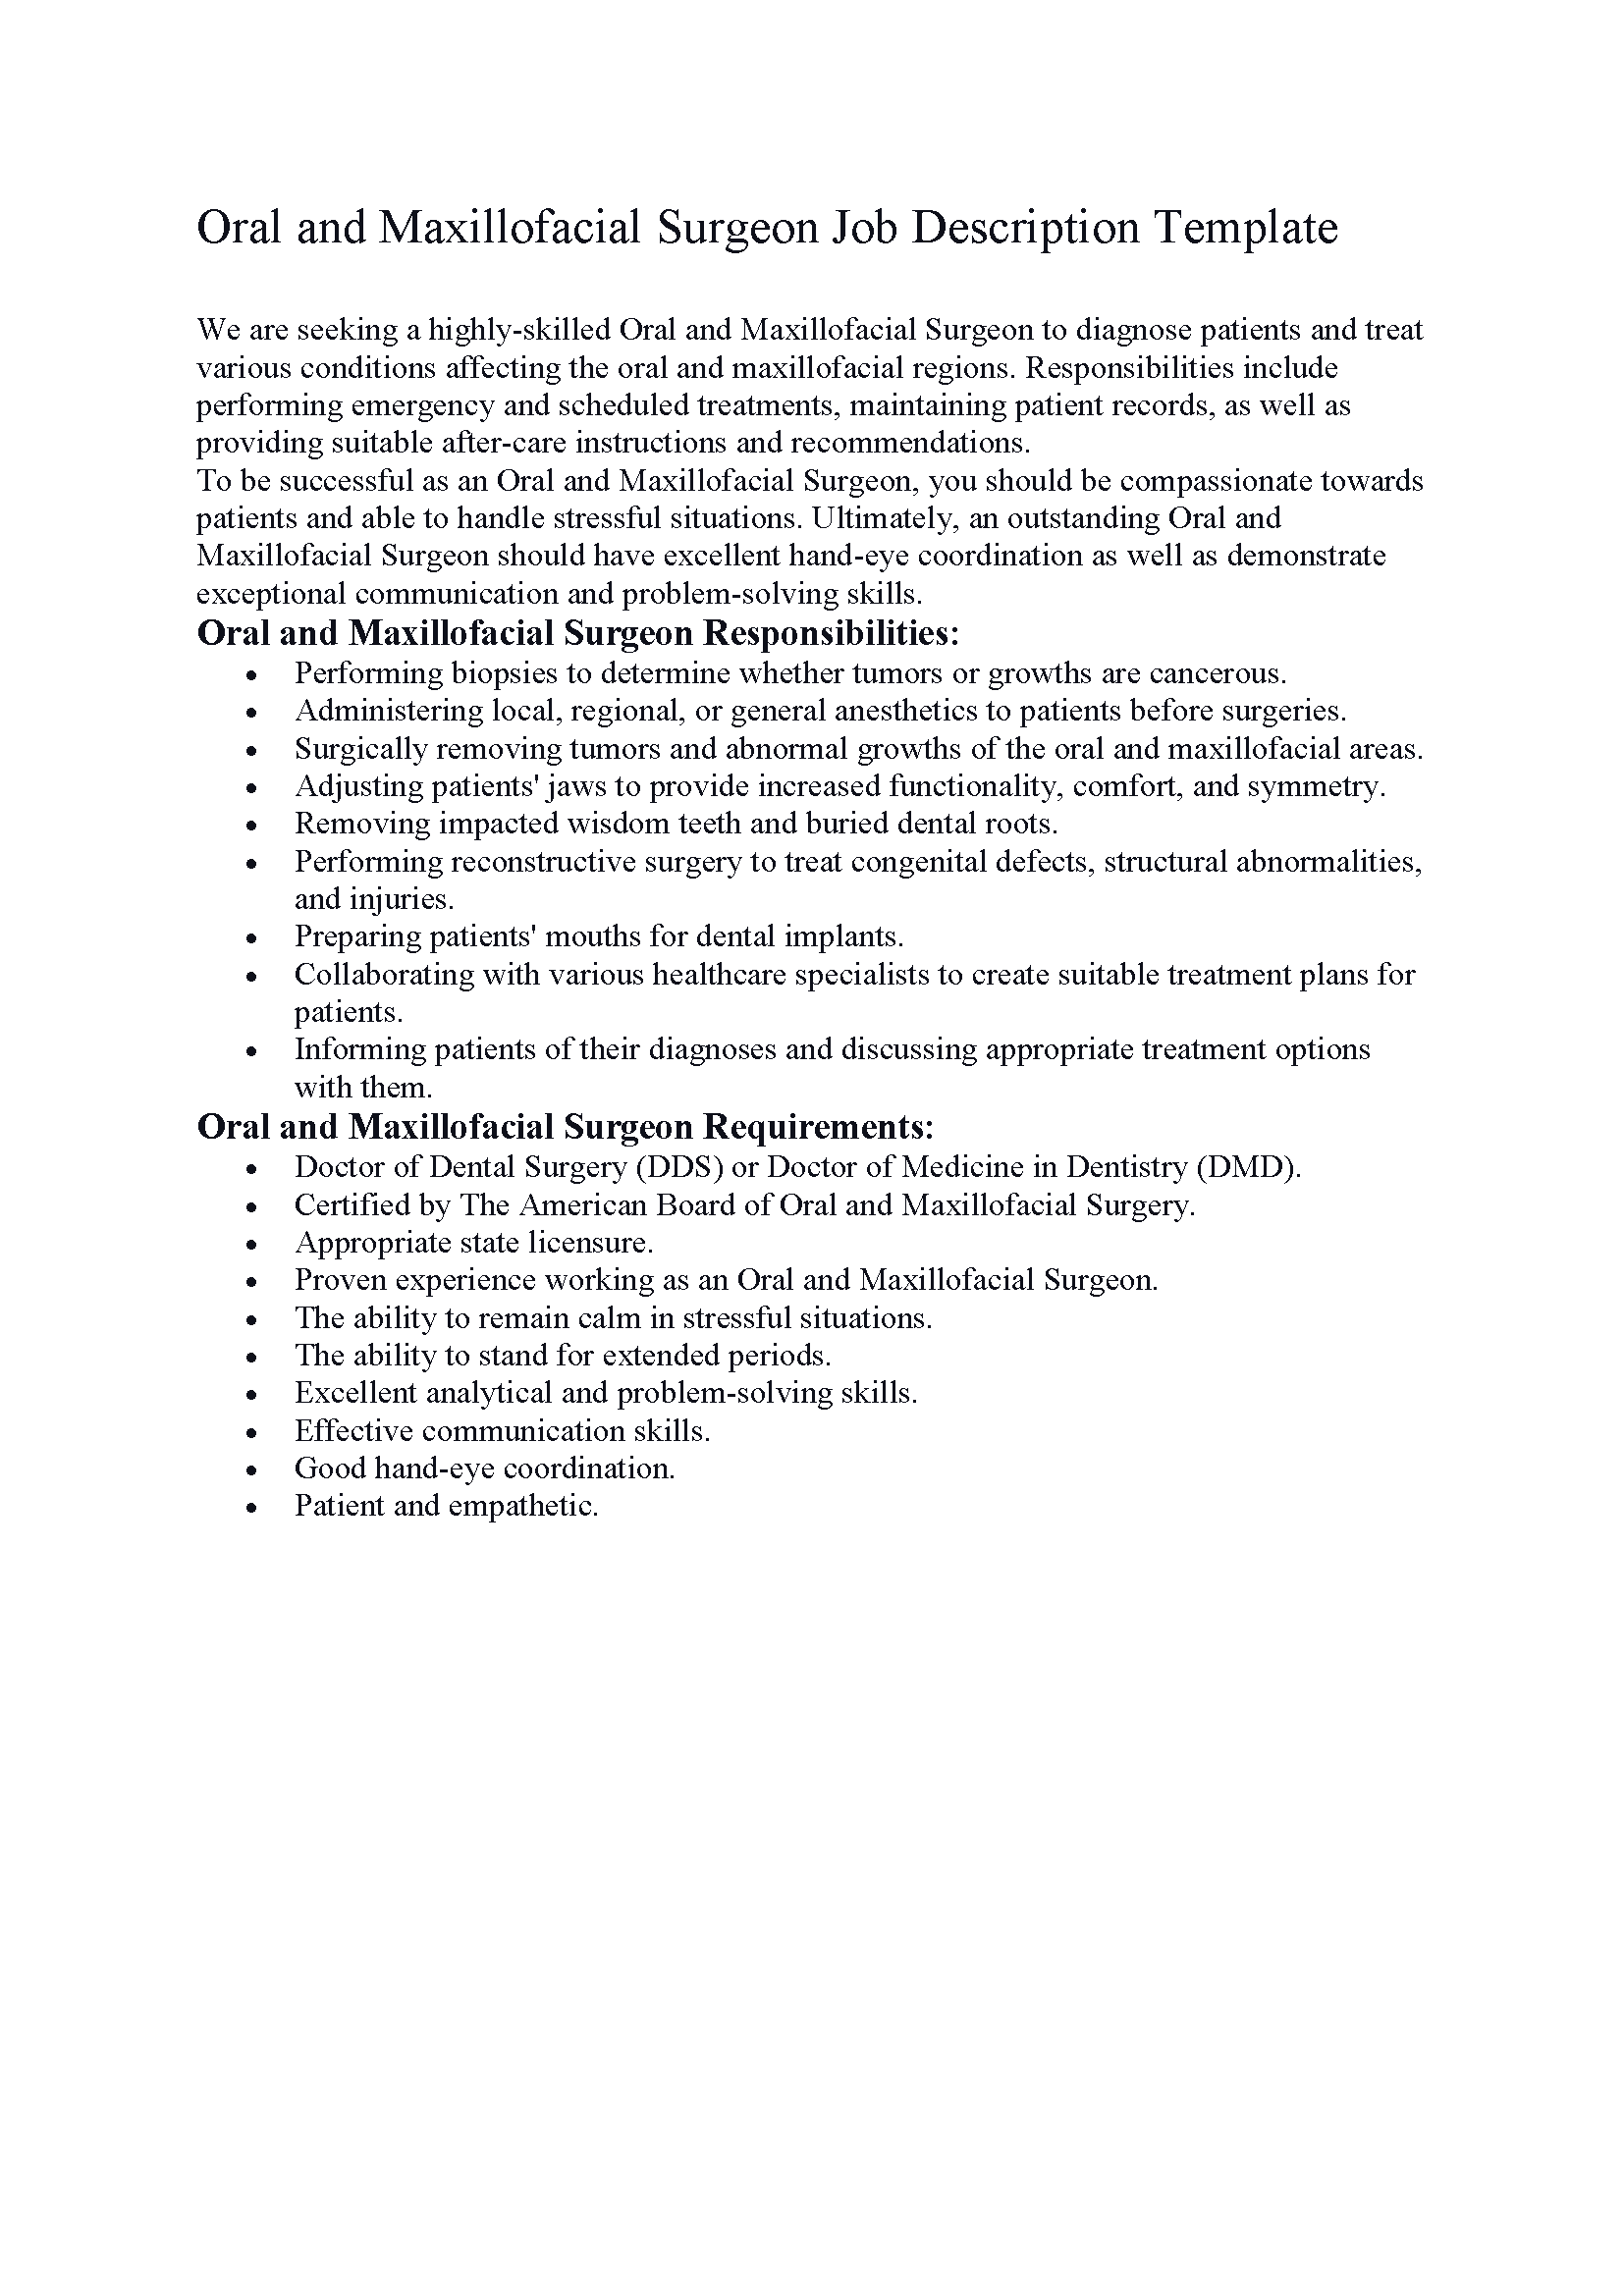 Oral and Maxillofacial Surgeon Job Description Template